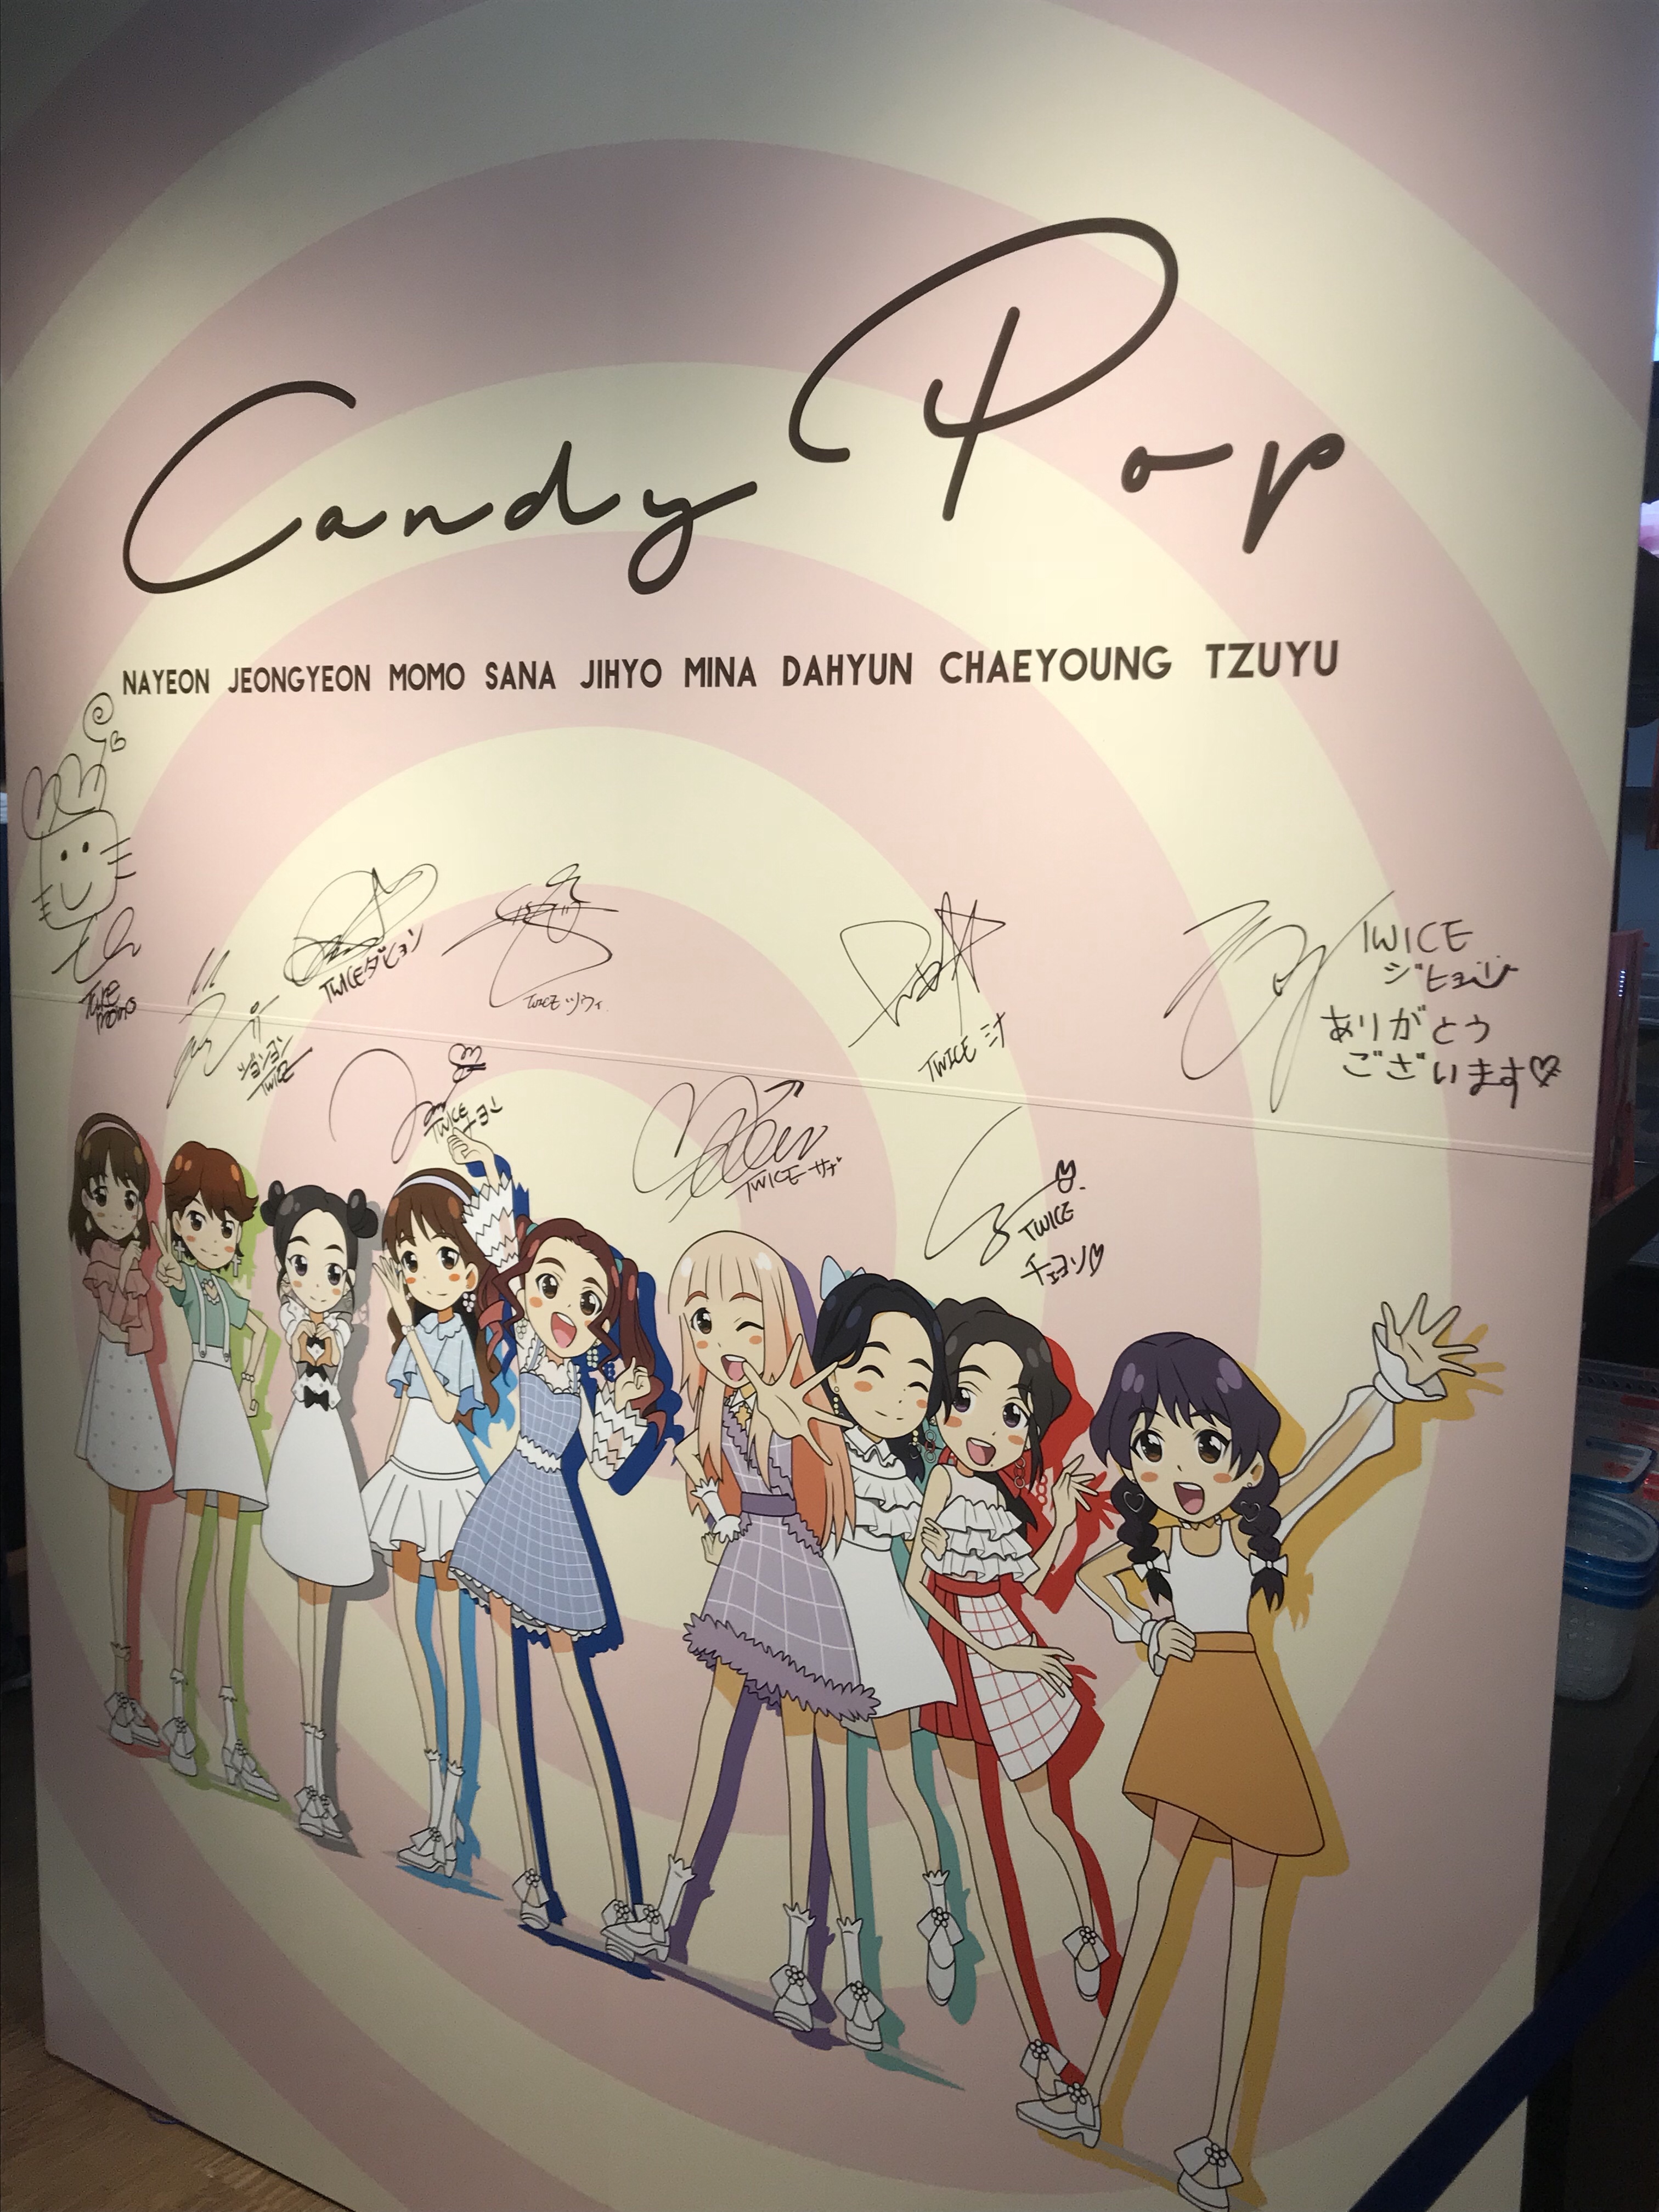 予約満席でも大丈夫 Twice Candy Pop Cafe当日の楽しみ方 Ikumin Pink いくみんぴんく 韓国 新大久保情報のブログ